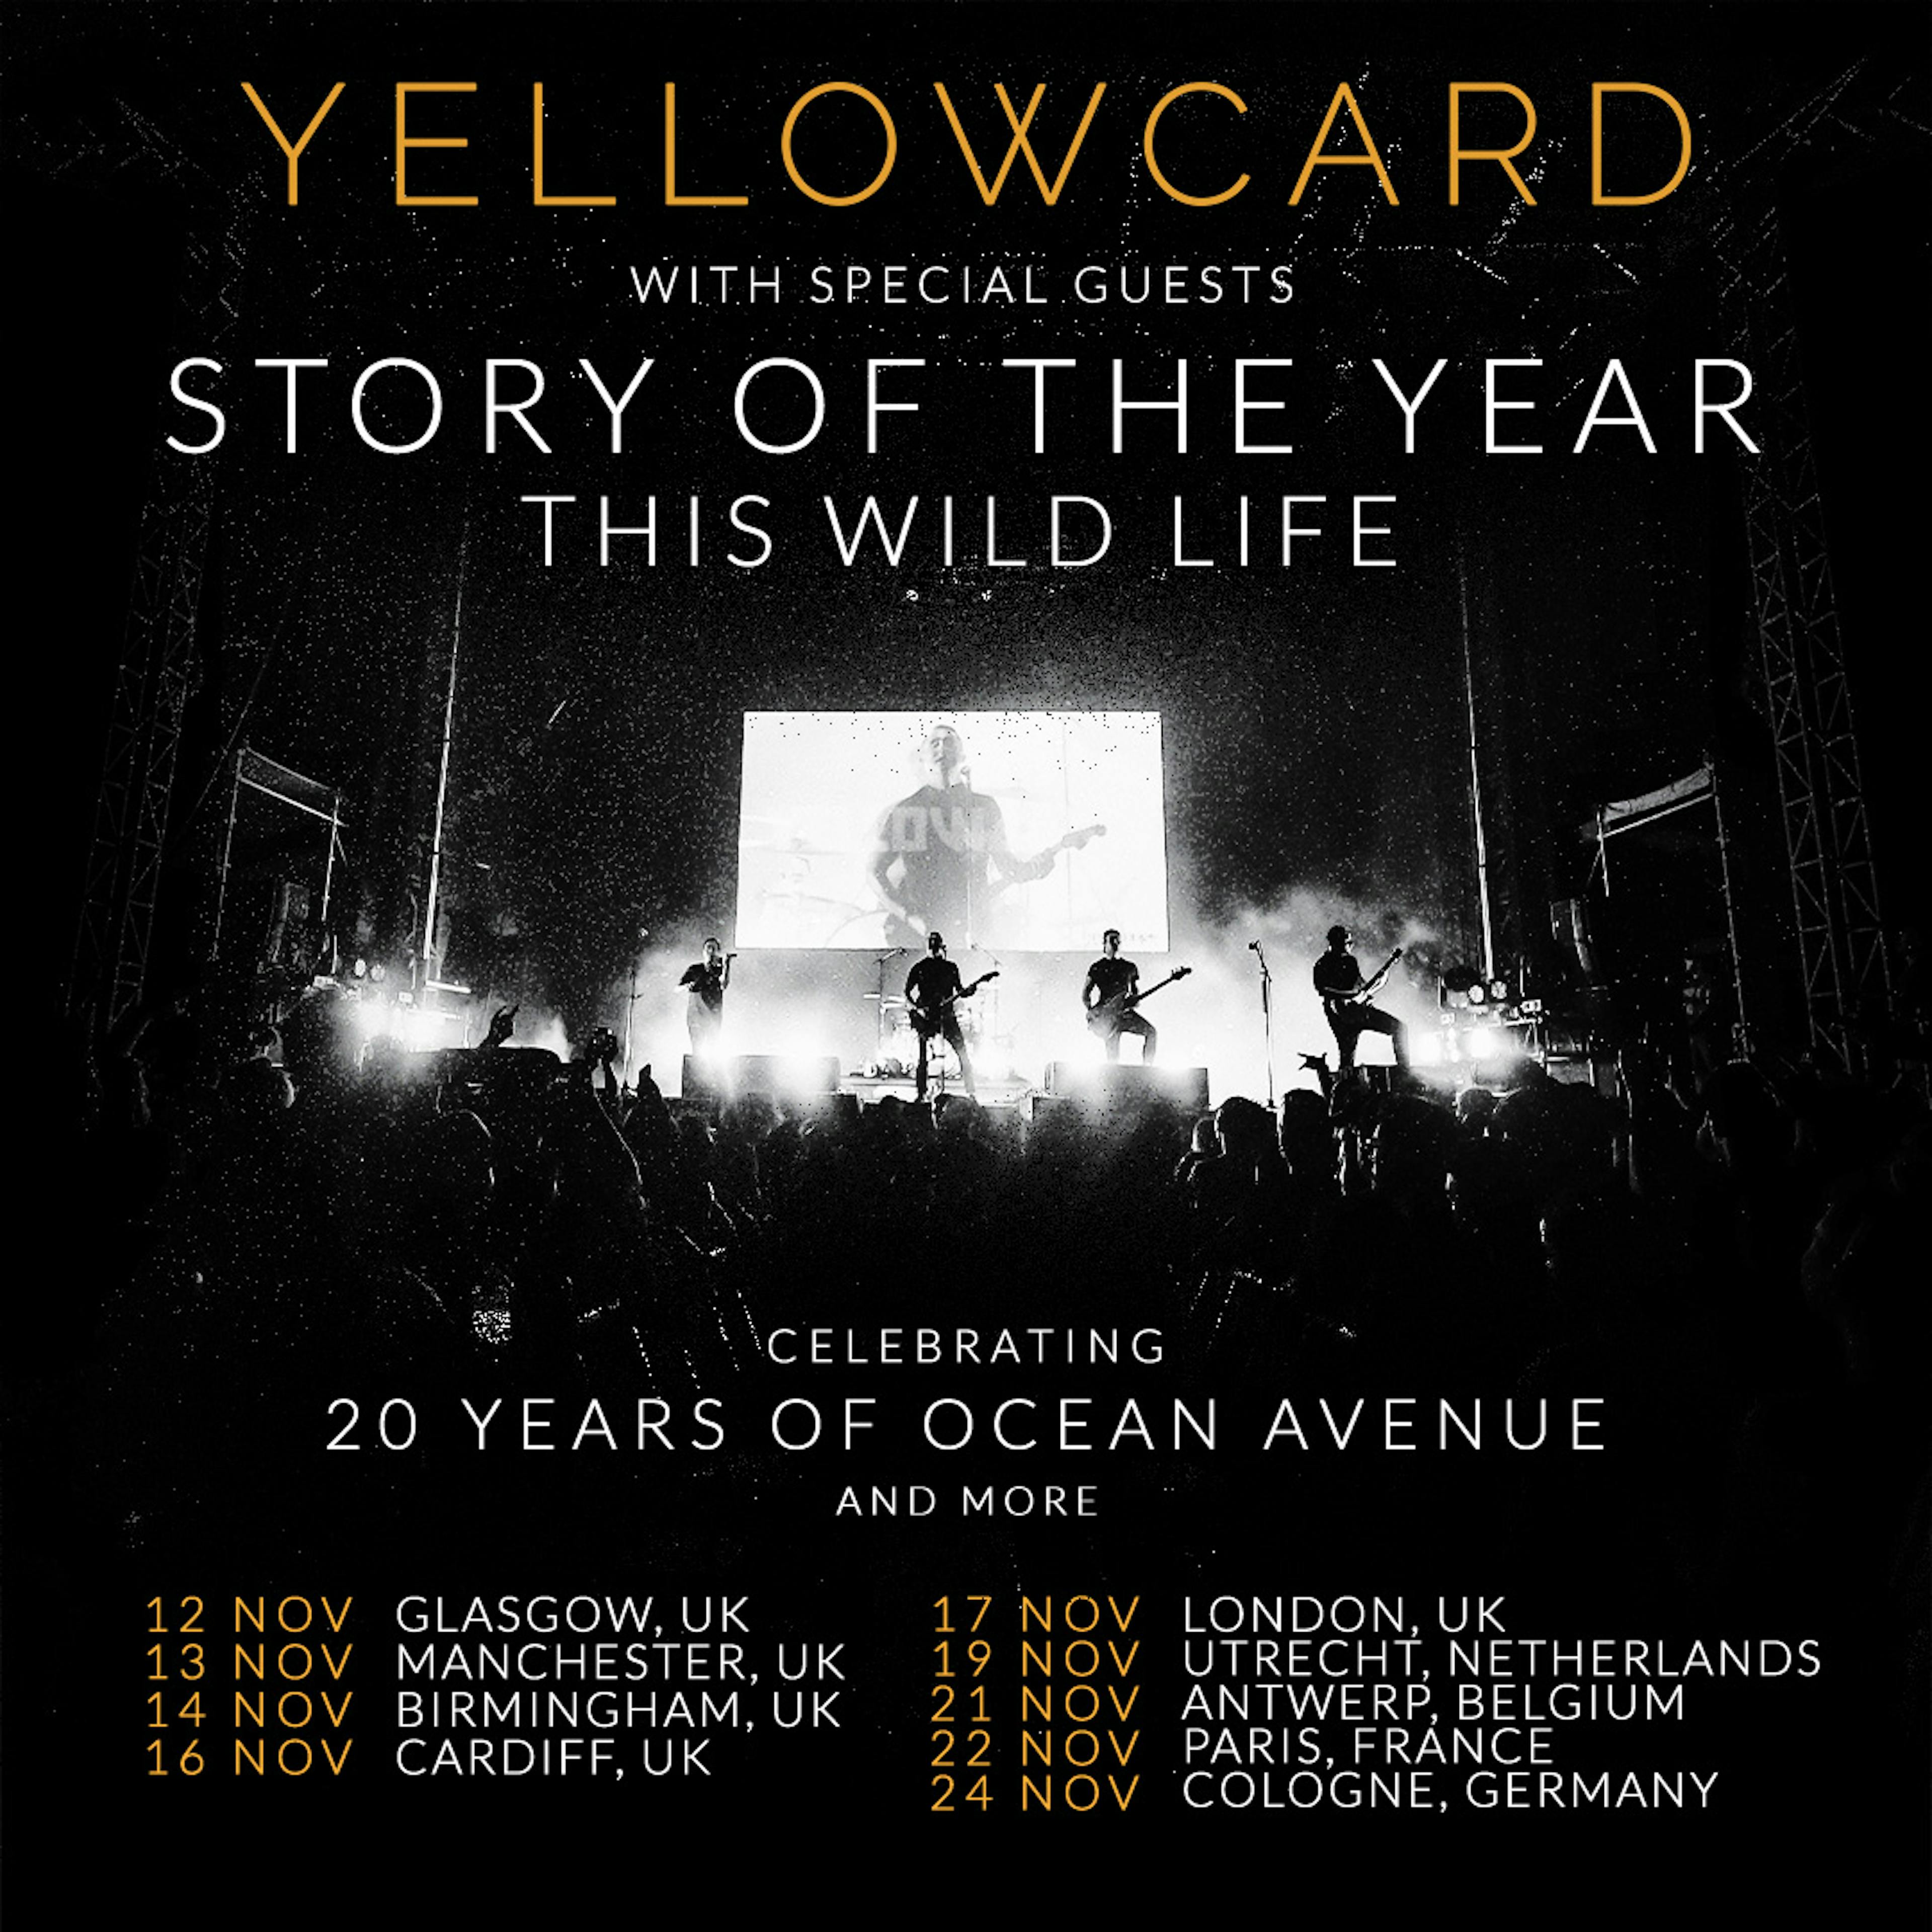 yellowcard tour setlist times